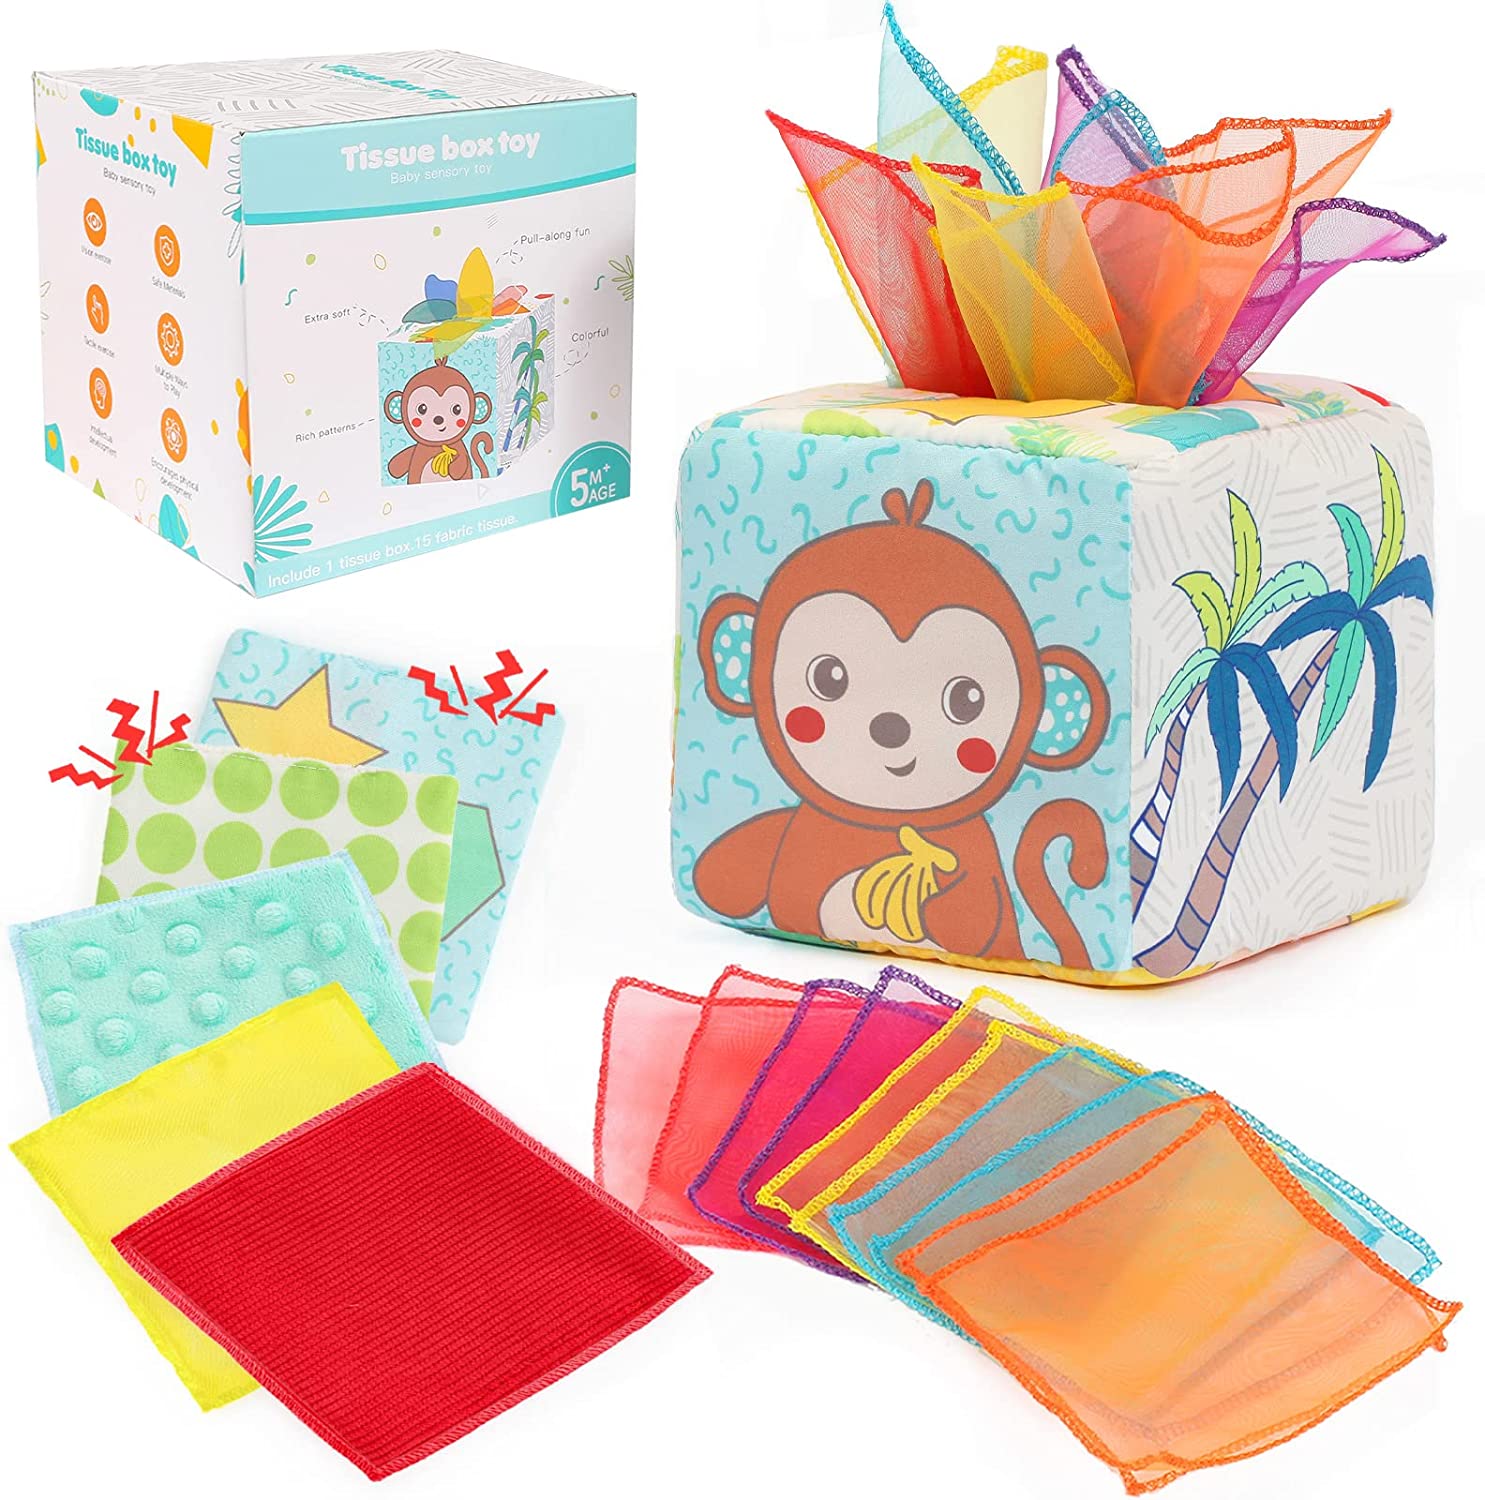 Labebe - baby tissue box toy